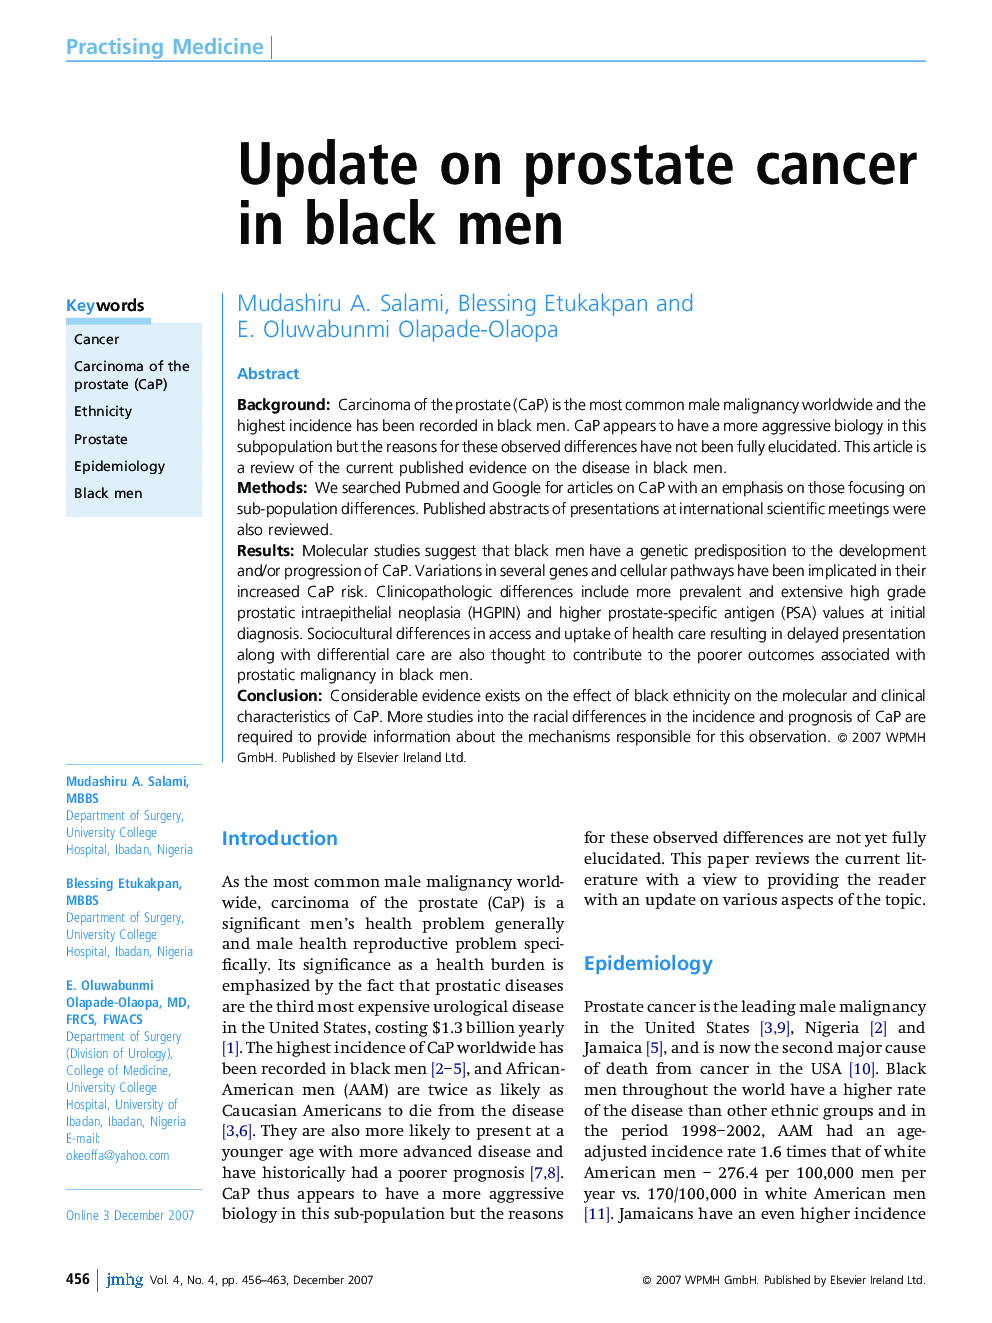 Update on prostate cancer in black men